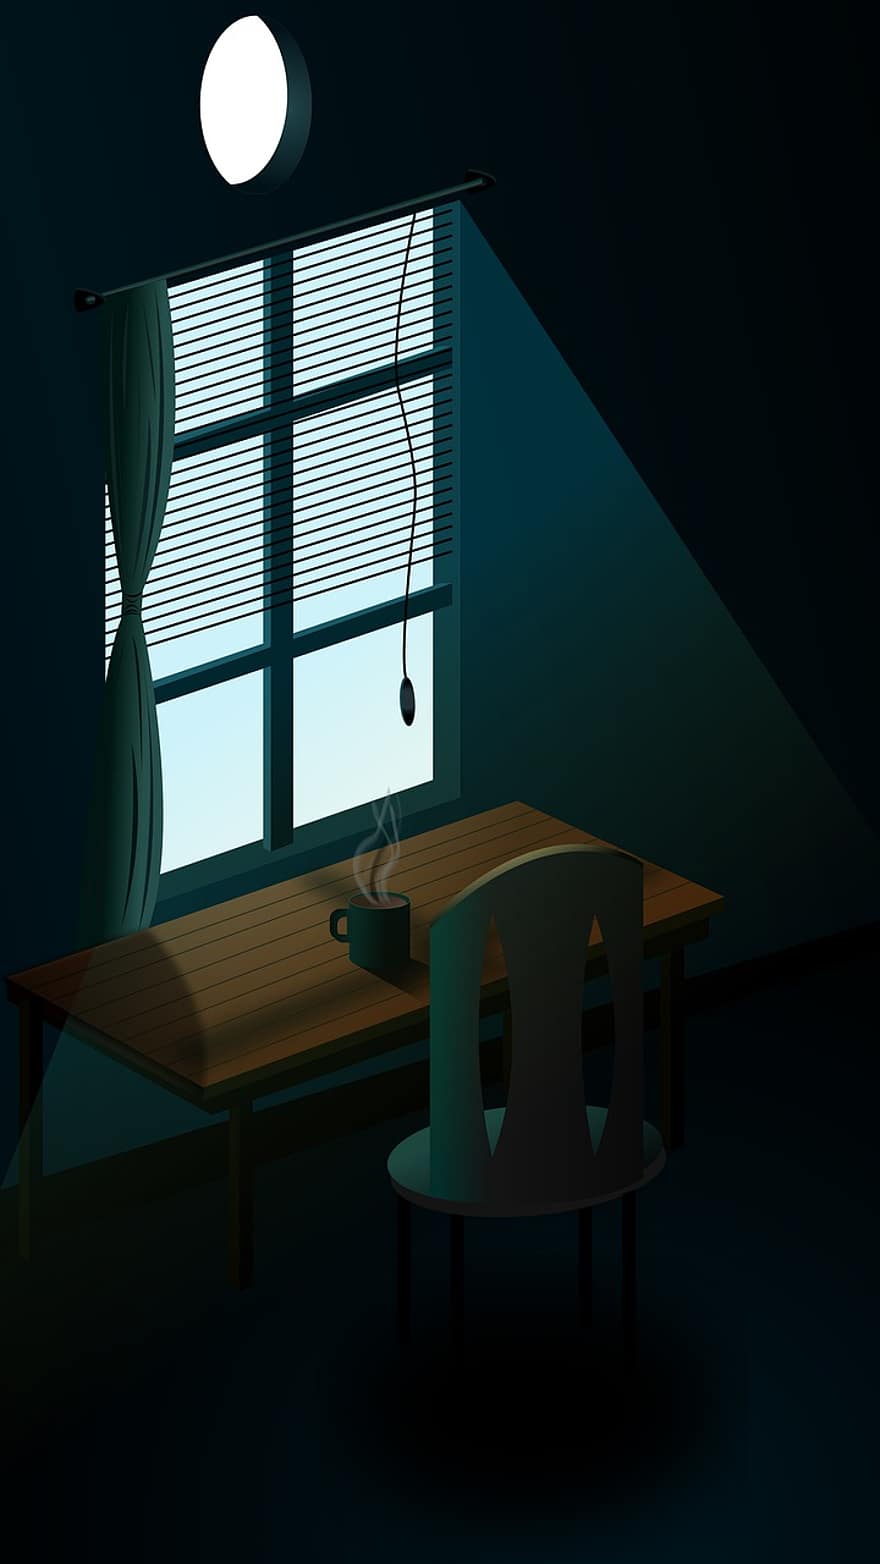 sötét szoba, szék, asztal, ablak, fény, szoba, bútor, fedett